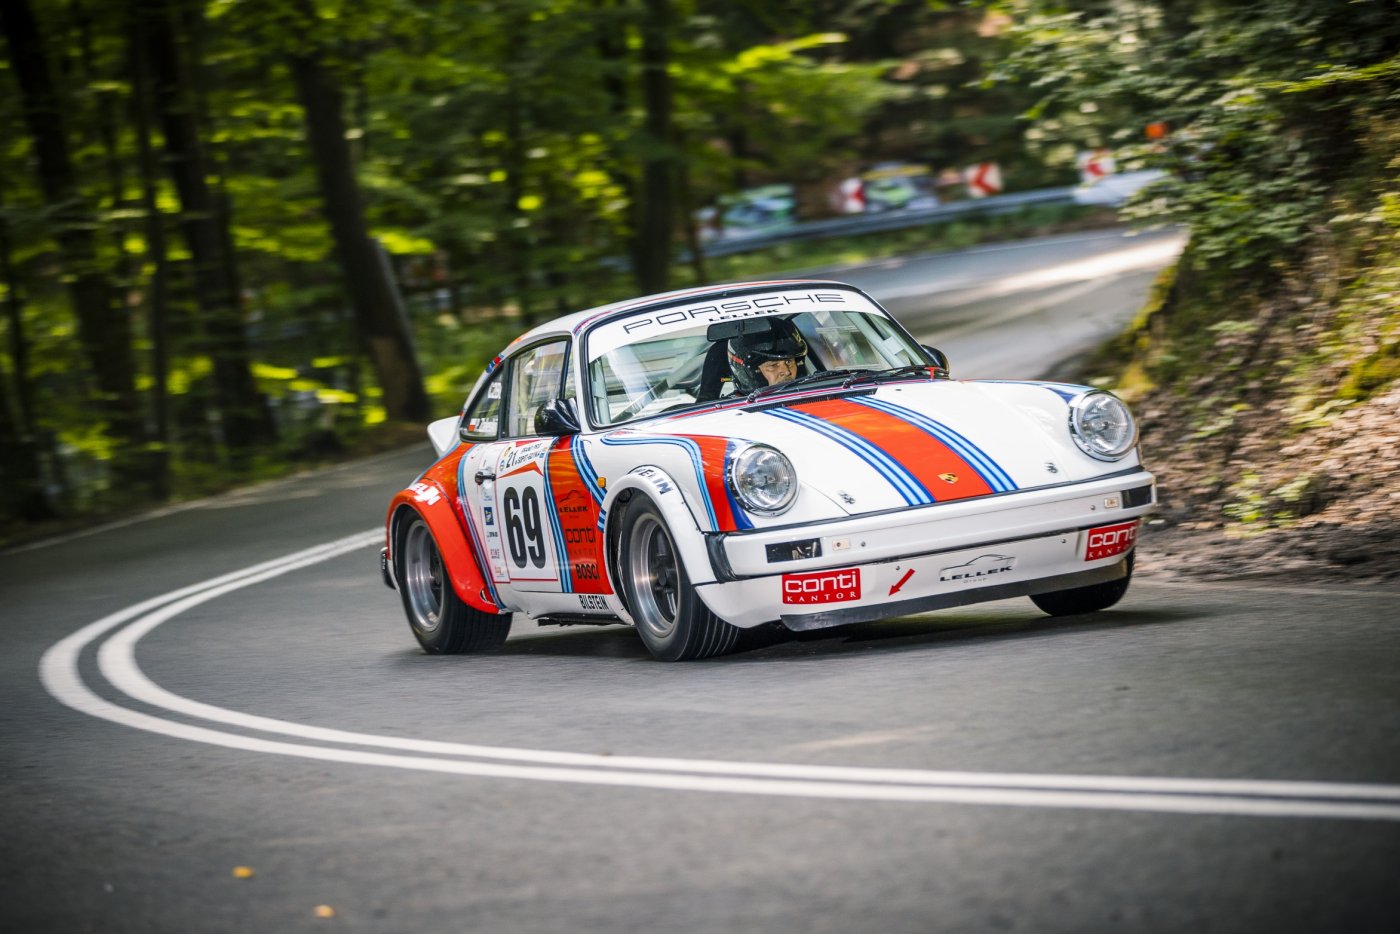 Asfaltowa droga w lesie. Wyraźnie jadąca pod górę z widocznym zakrętem. Na zdjęciu biało-czerwony samochód sportowy marki Porsche.